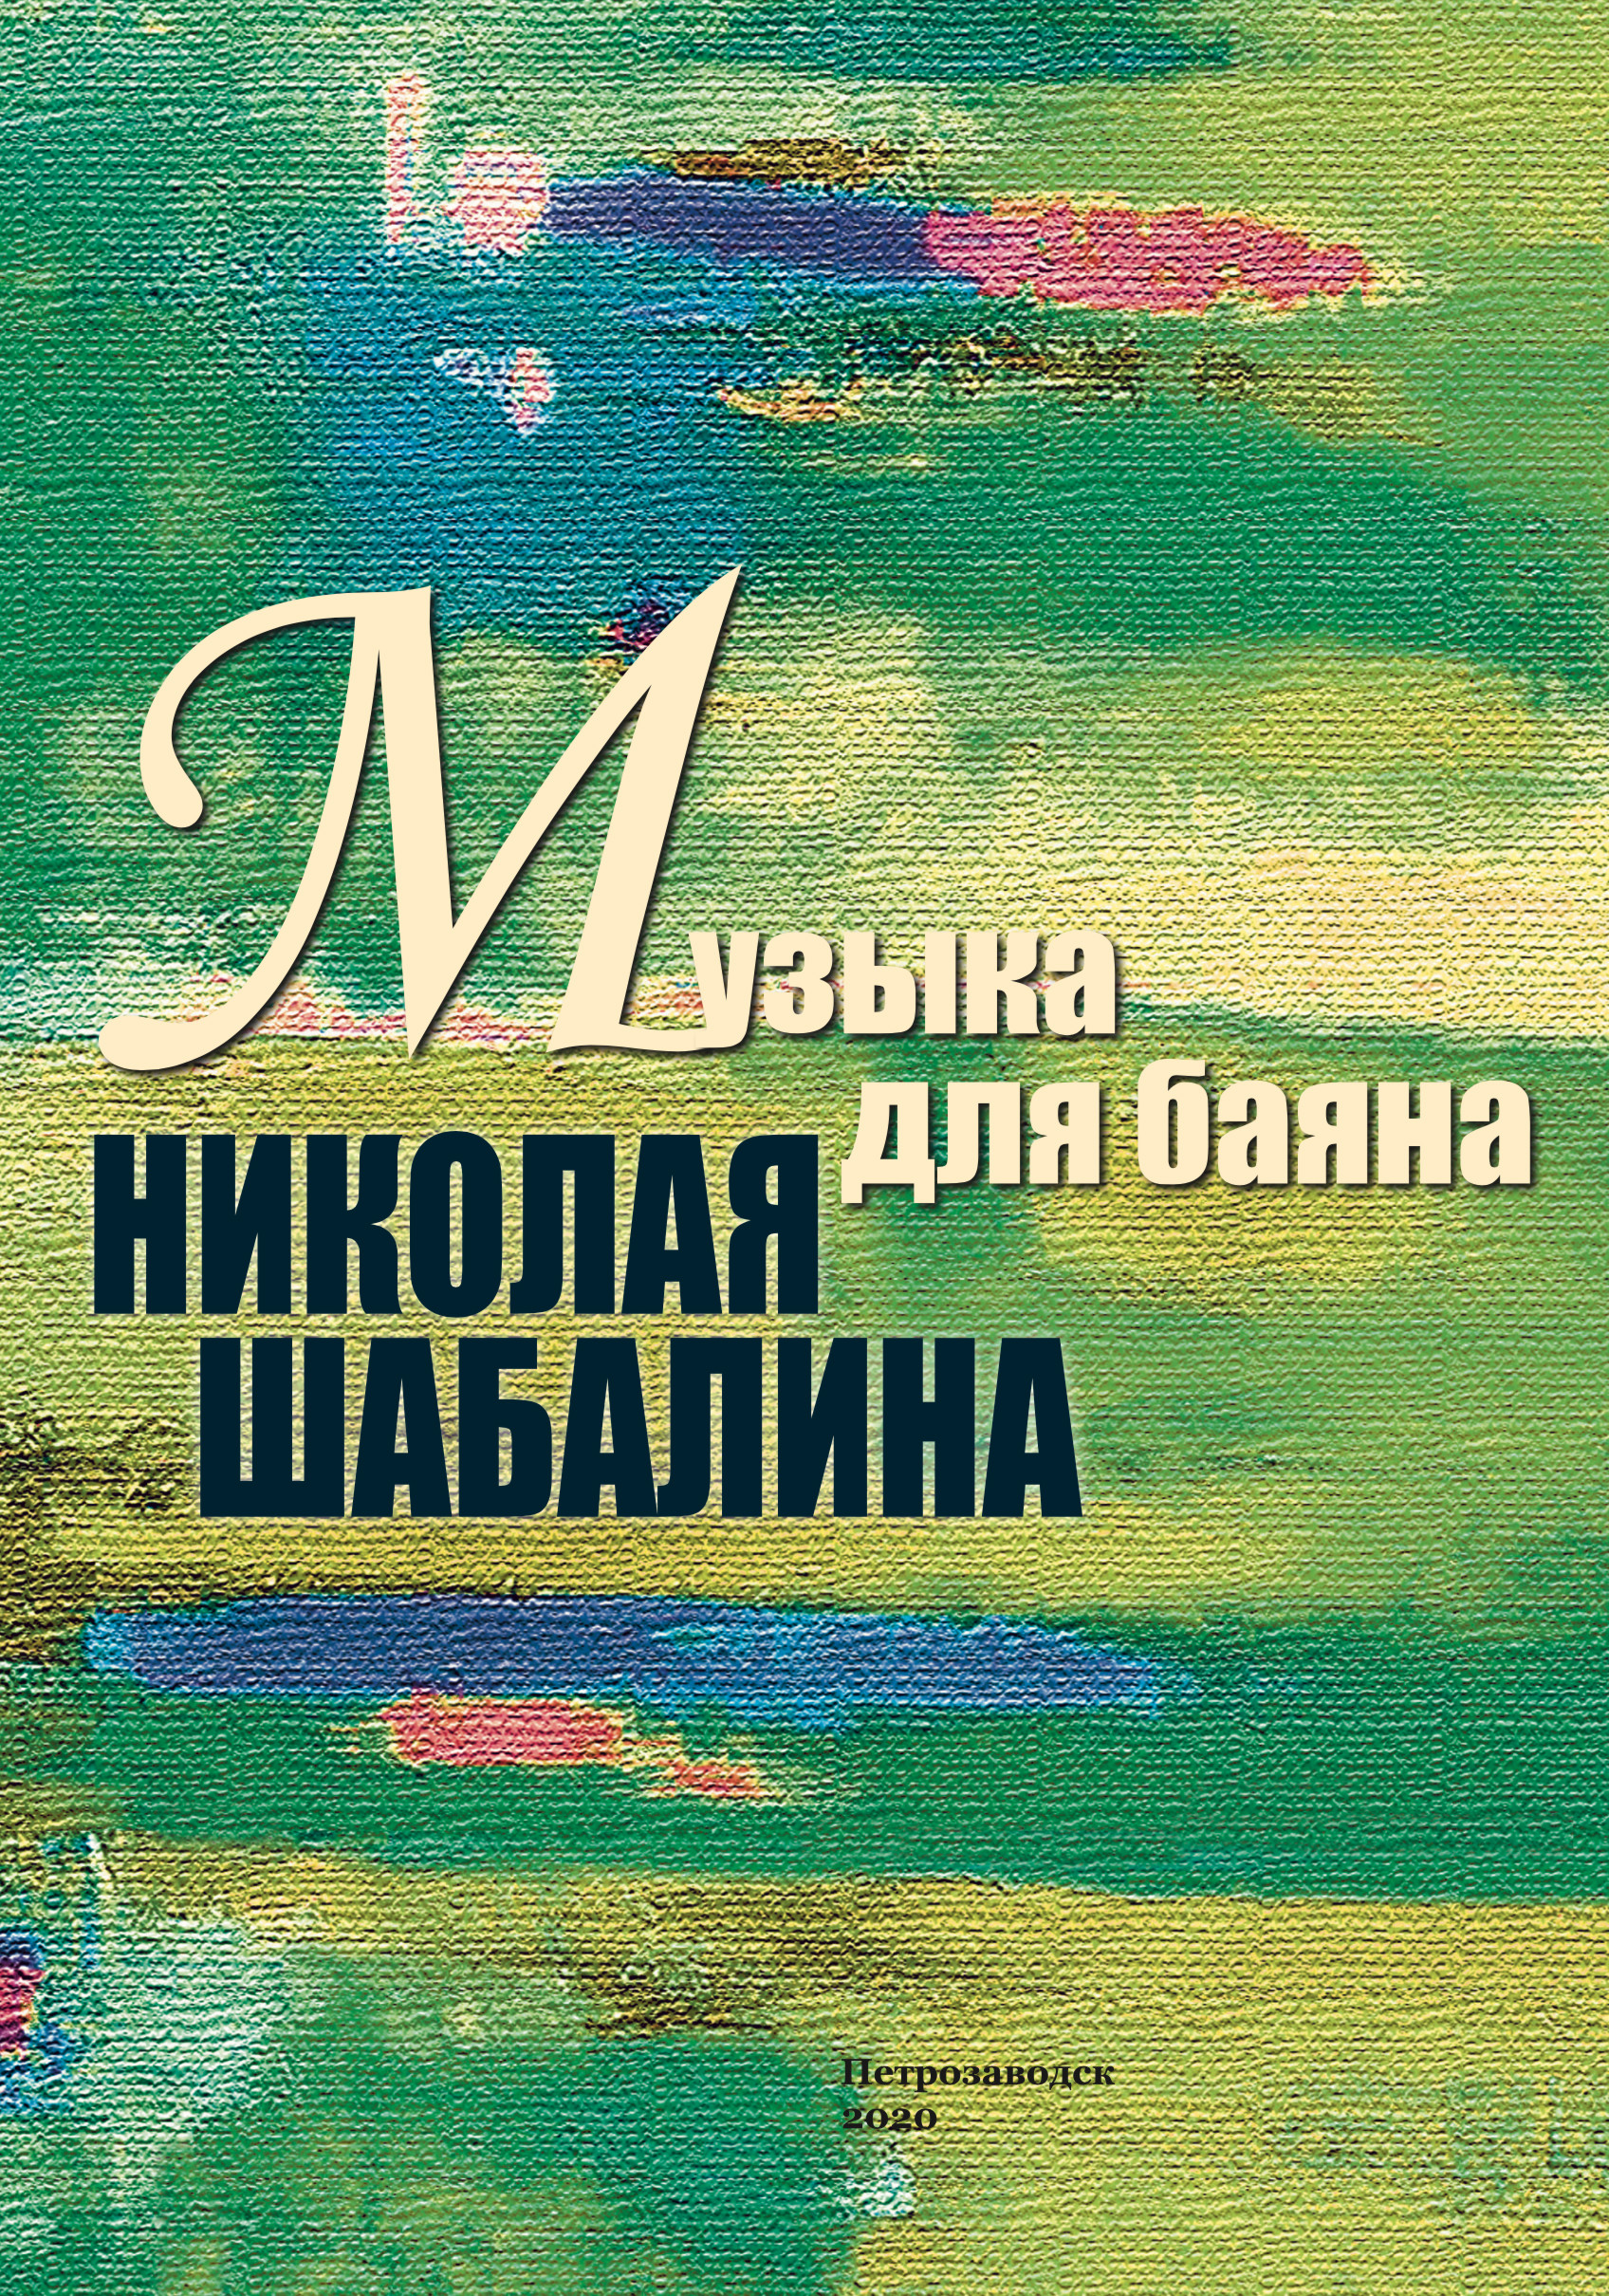 В настоящий сборник вошли оригинальные сочинения и переложения для баяна удмуртского композитора Николая Шабалина, написанные в разные годы.